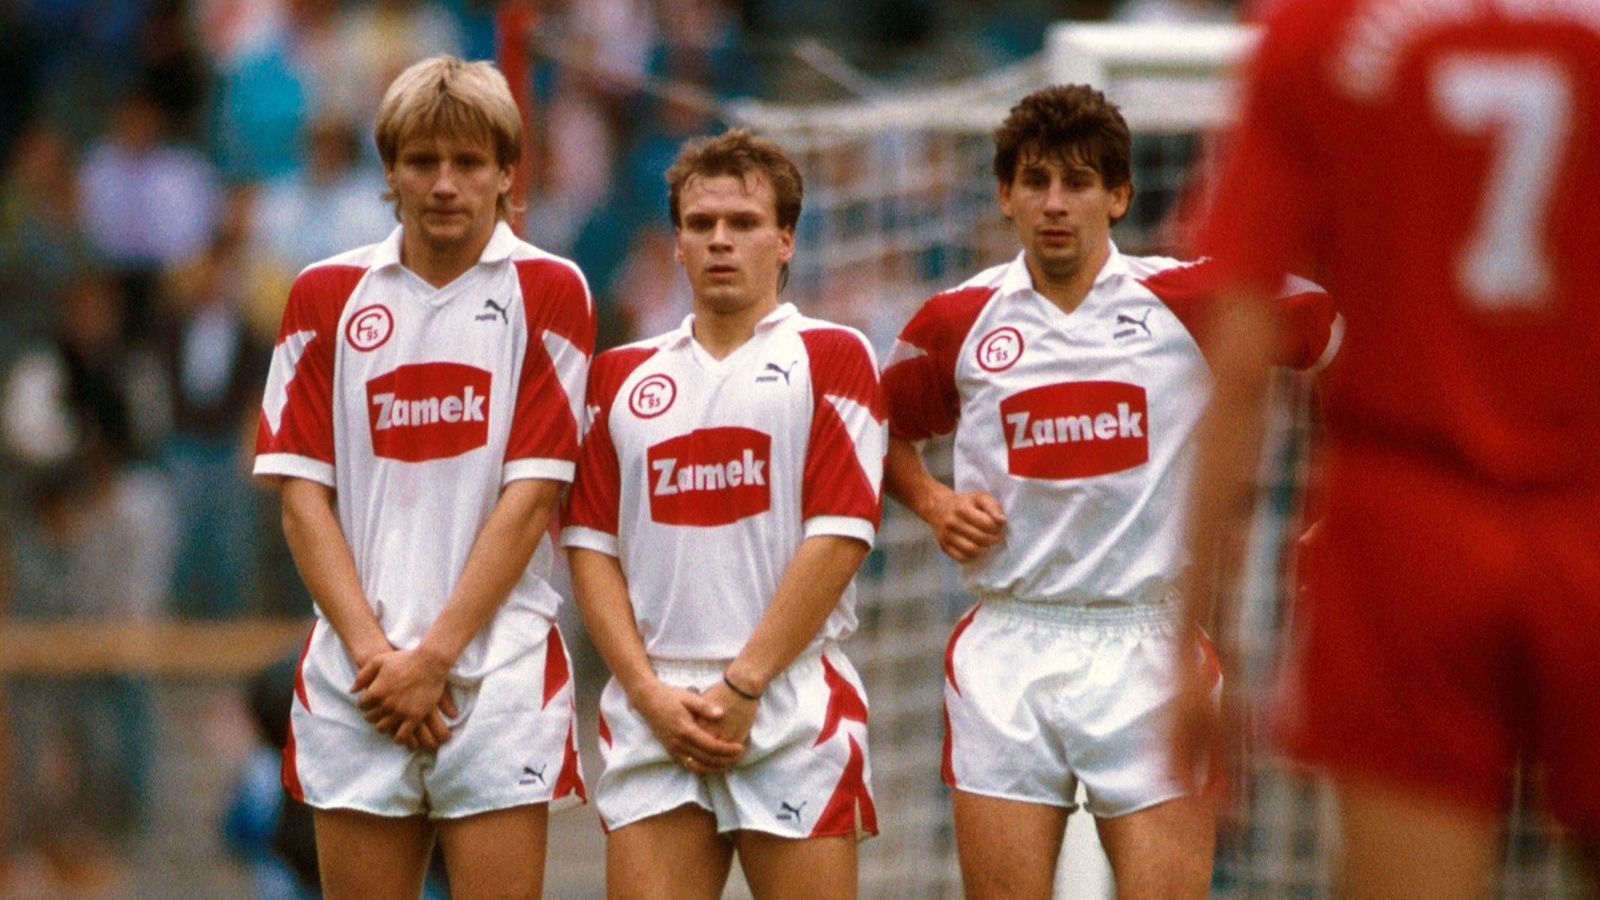 
                <strong>Fortuna Düsseldorf (91/92)</strong><br>
                Fortuna Düsseldorf (Saison 1991/92): Sechs Spiele, sechs Niederlagen - Torverhältnis: 4:15 (-11).Endplatzierung: 20. mit 24-52 Punkten und 41:69 Toren. Abstieg.
              